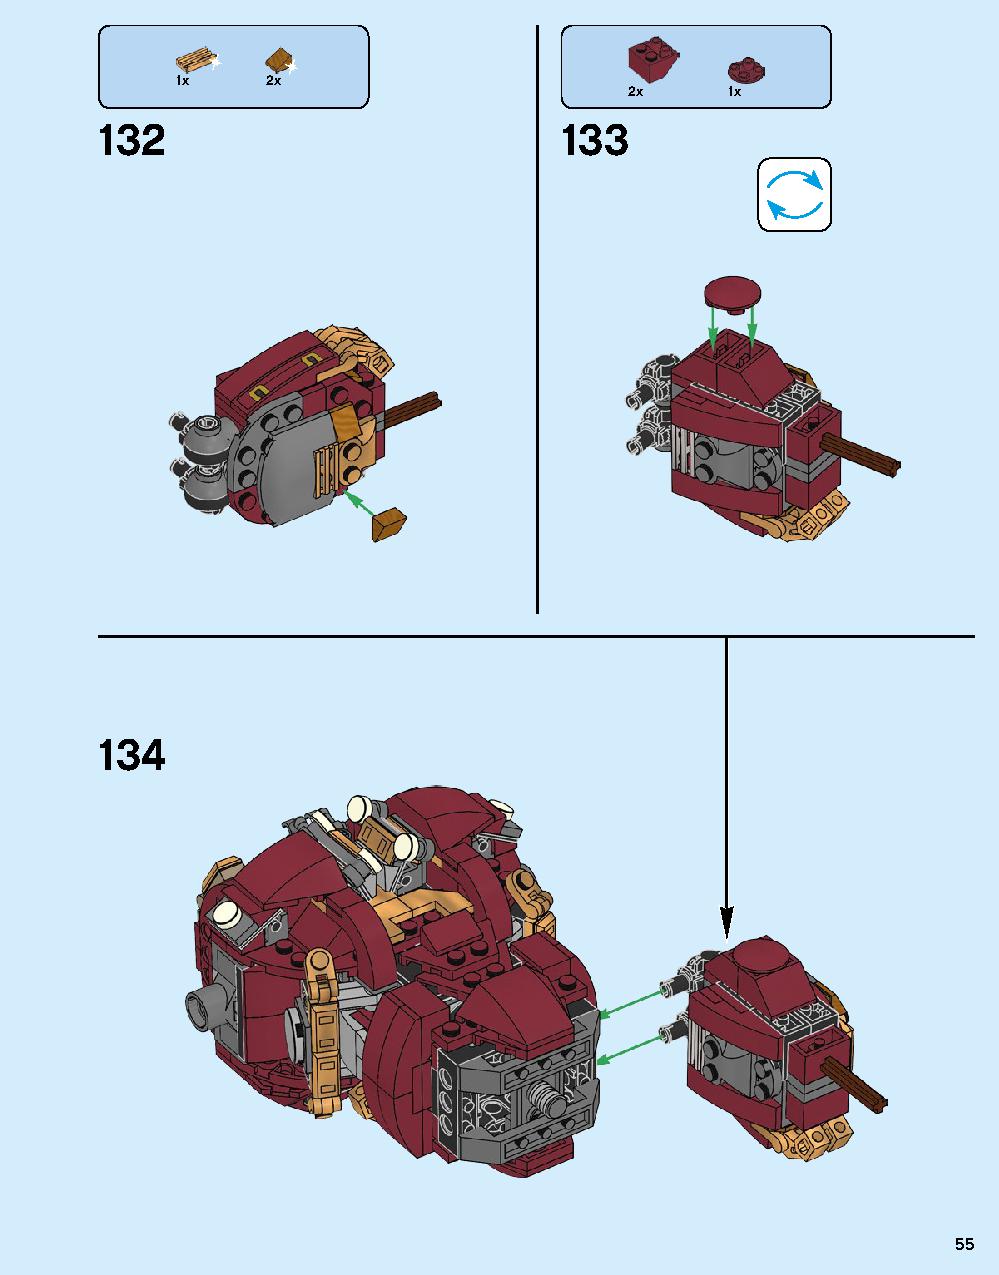 ハルクバスター：ウルトロン・エディション 76105 レゴの商品情報 レゴの説明書・組立方法 55 page